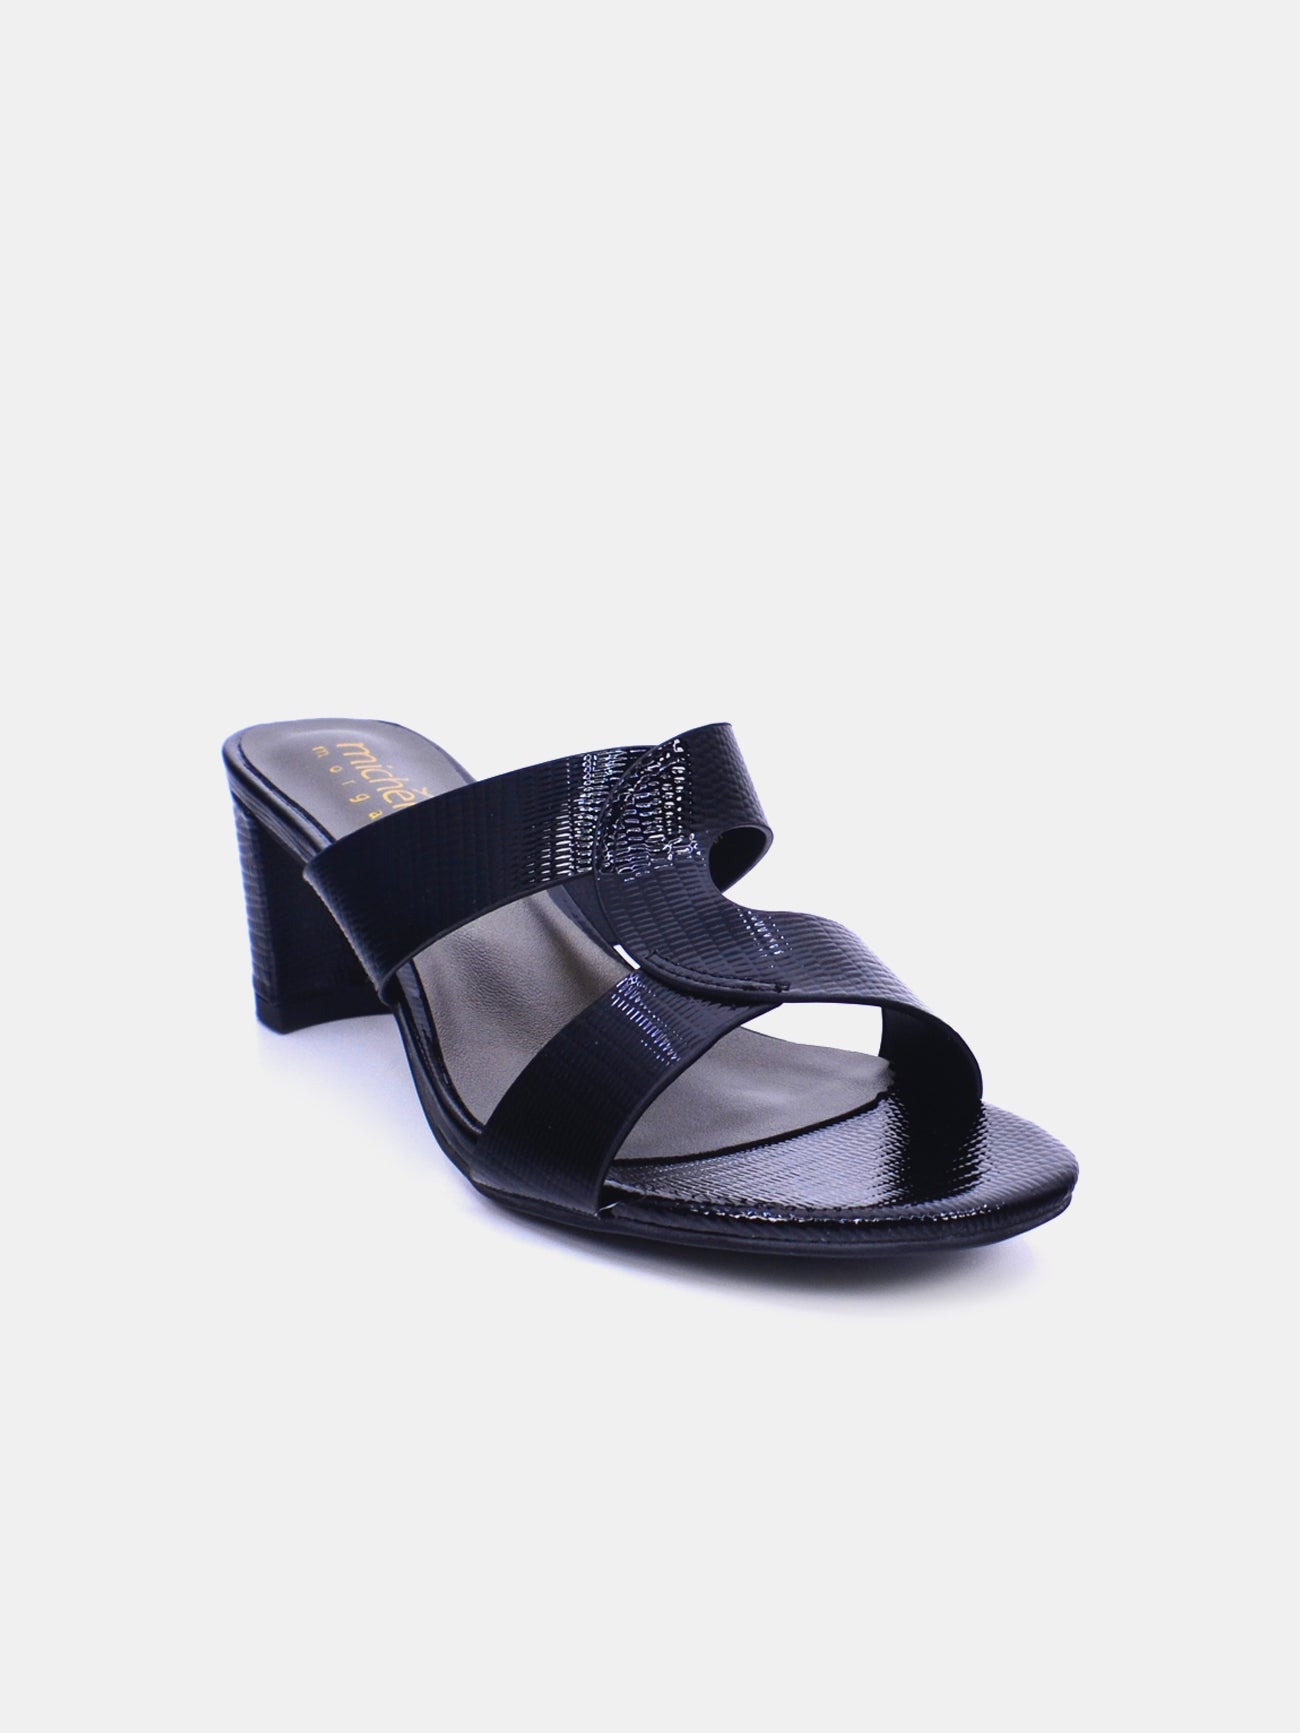 Michelle Morgan 314RJ19C Women's Heeled Sandals #color_Black